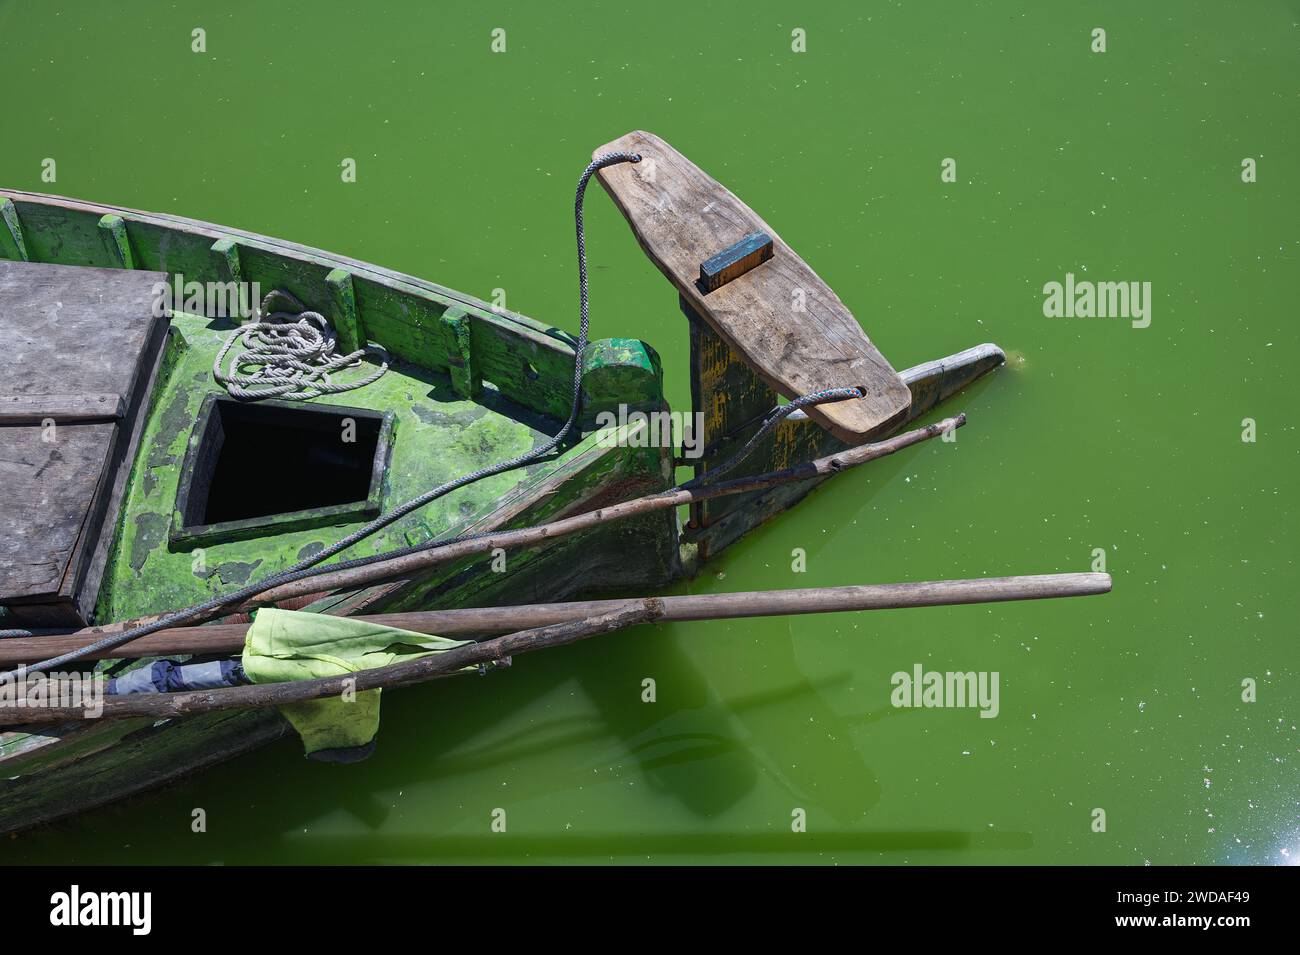 Vue imprenable sur une partie d'un bateau de pêche vert sur une rivière verte sans personnes Banque D'Images